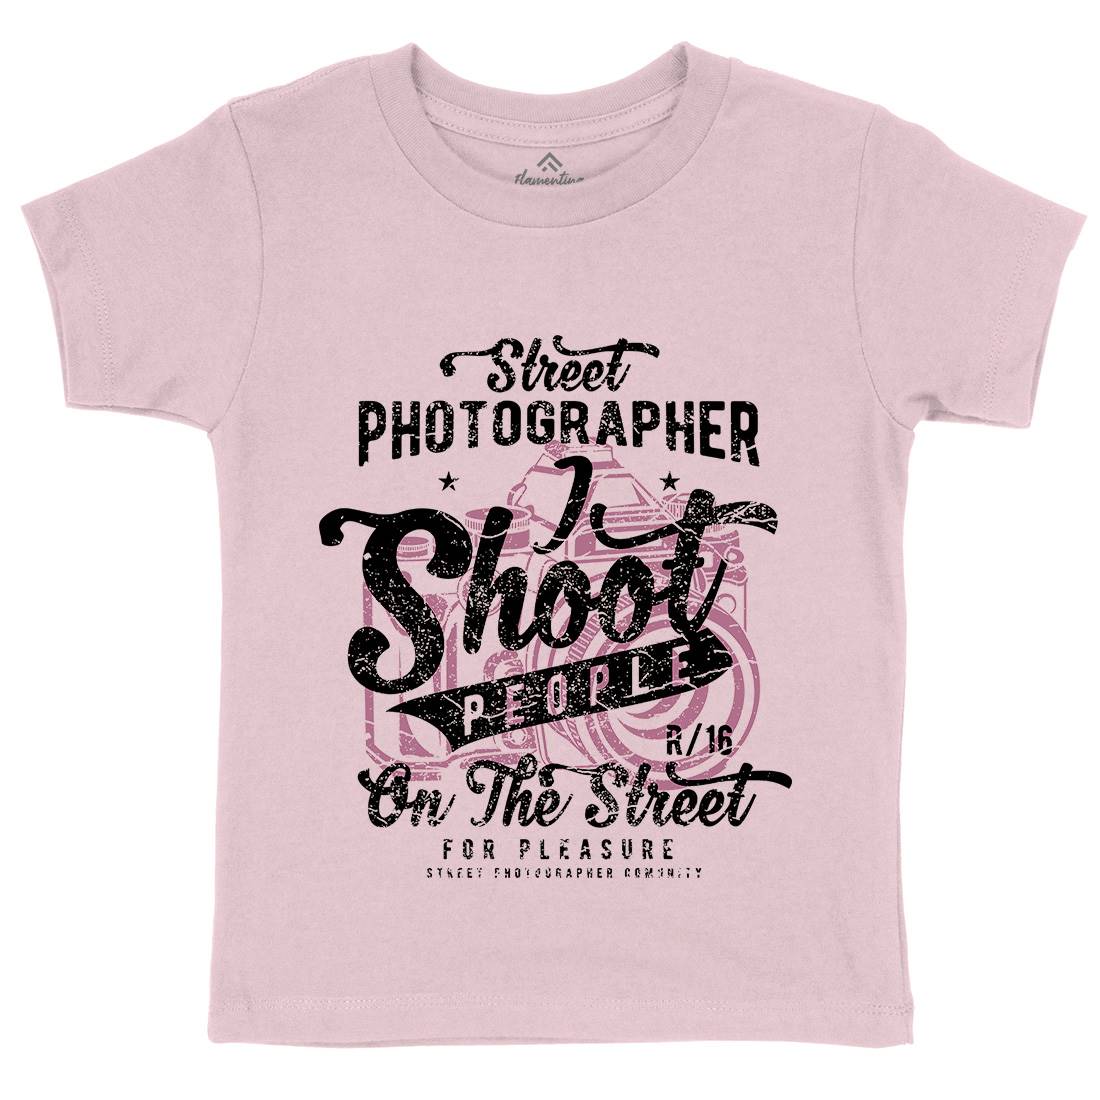 Street Photographer Kids Crew Neck T-Shirt Media A162